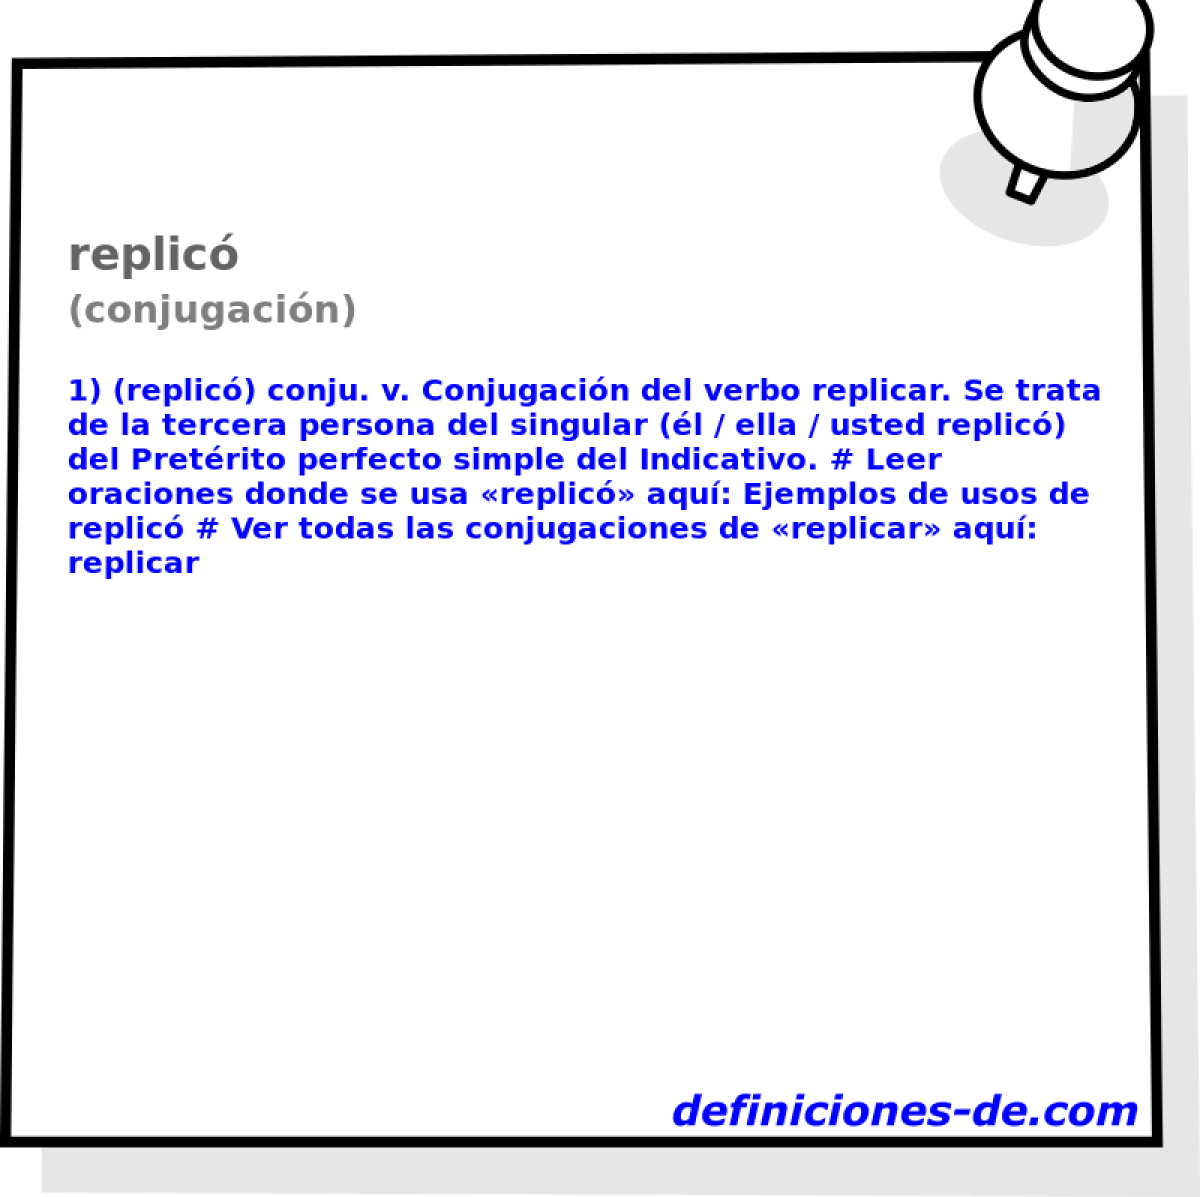 replic (conjugacin)